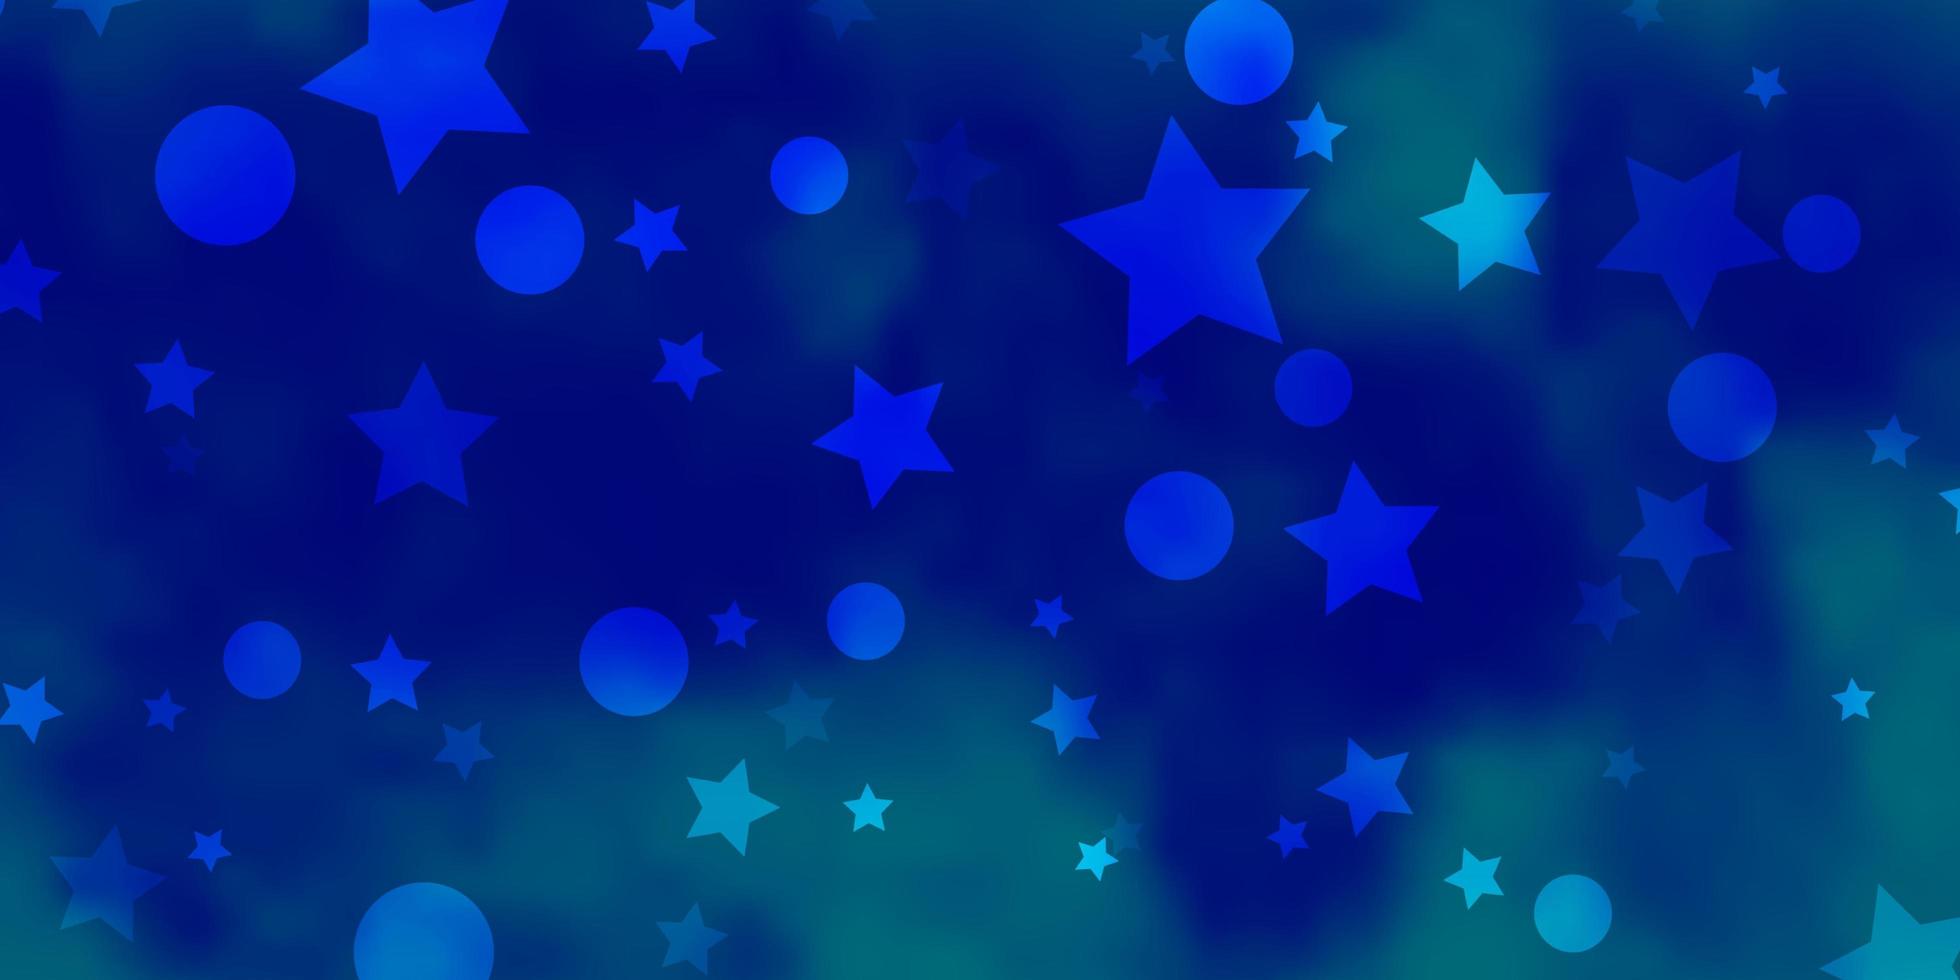 Telón de fondo de vector azul claro con círculos, estrellas. discos de colores, estrellas sobre fondo degradado simple. diseño para papel pintado, fabricantes de telas.